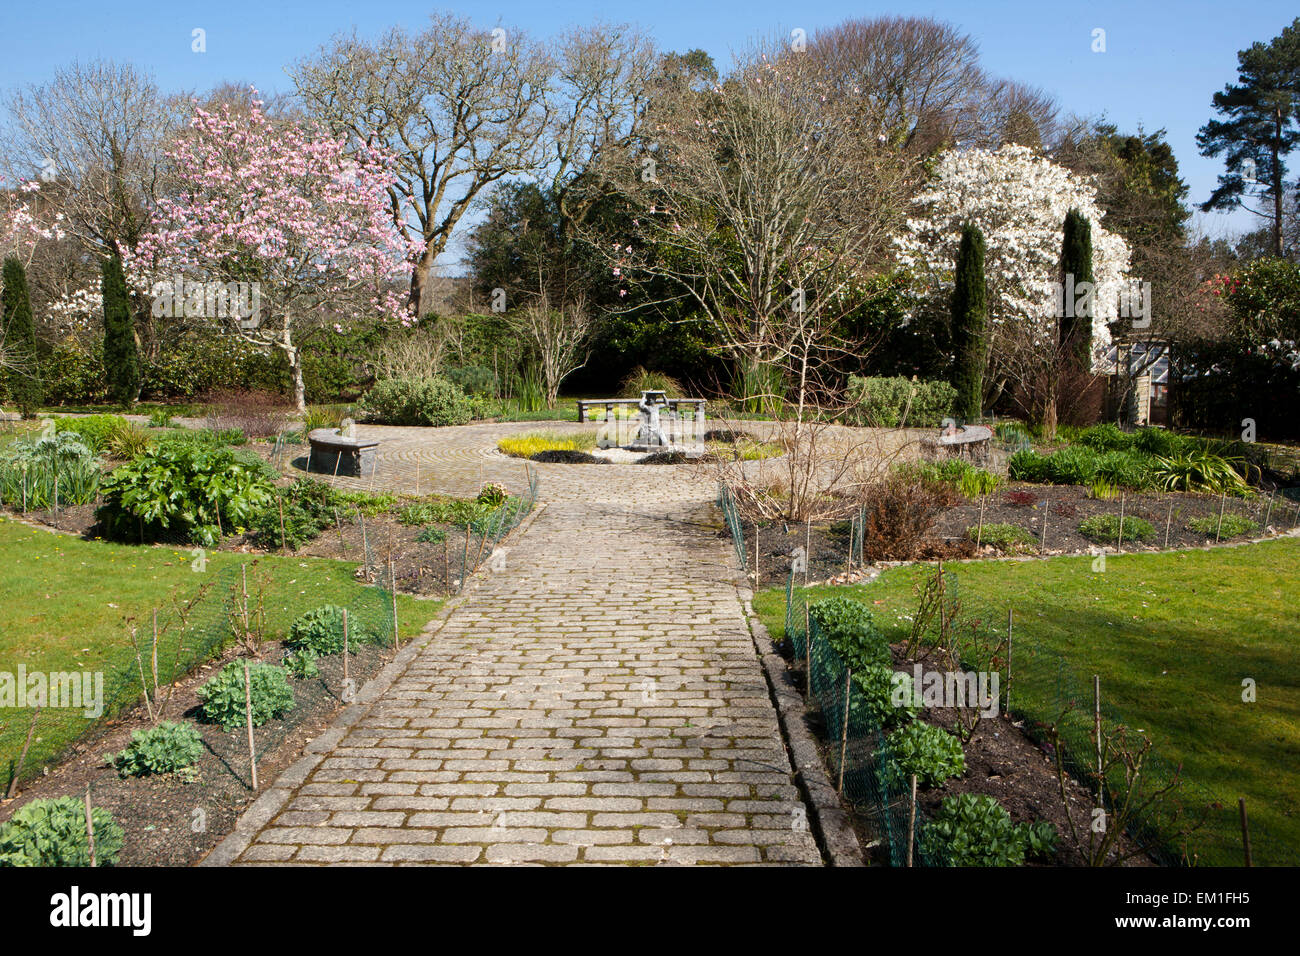 Lo Slave giardini presso il Parco Pinetum St Austell Cornwall su una giornata di primavera con magnolie,meridiana e ampi sentieri Foto Stock